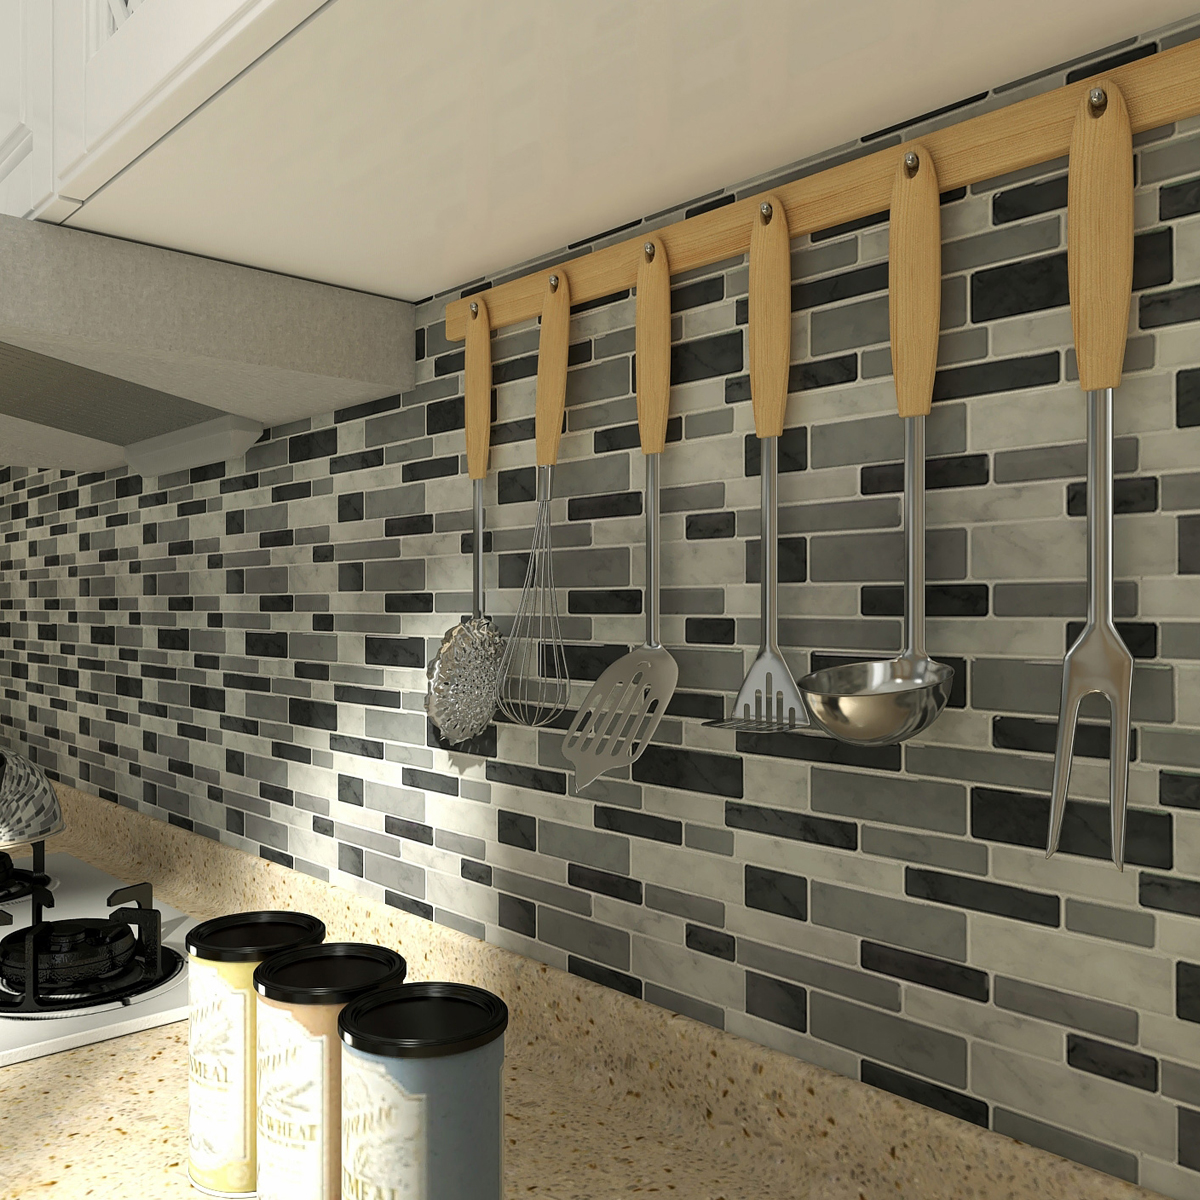 A17071 10 Sheets Peel And Stick Tile Backsplash For Kitchen Backsplash Gray Decorative Tile